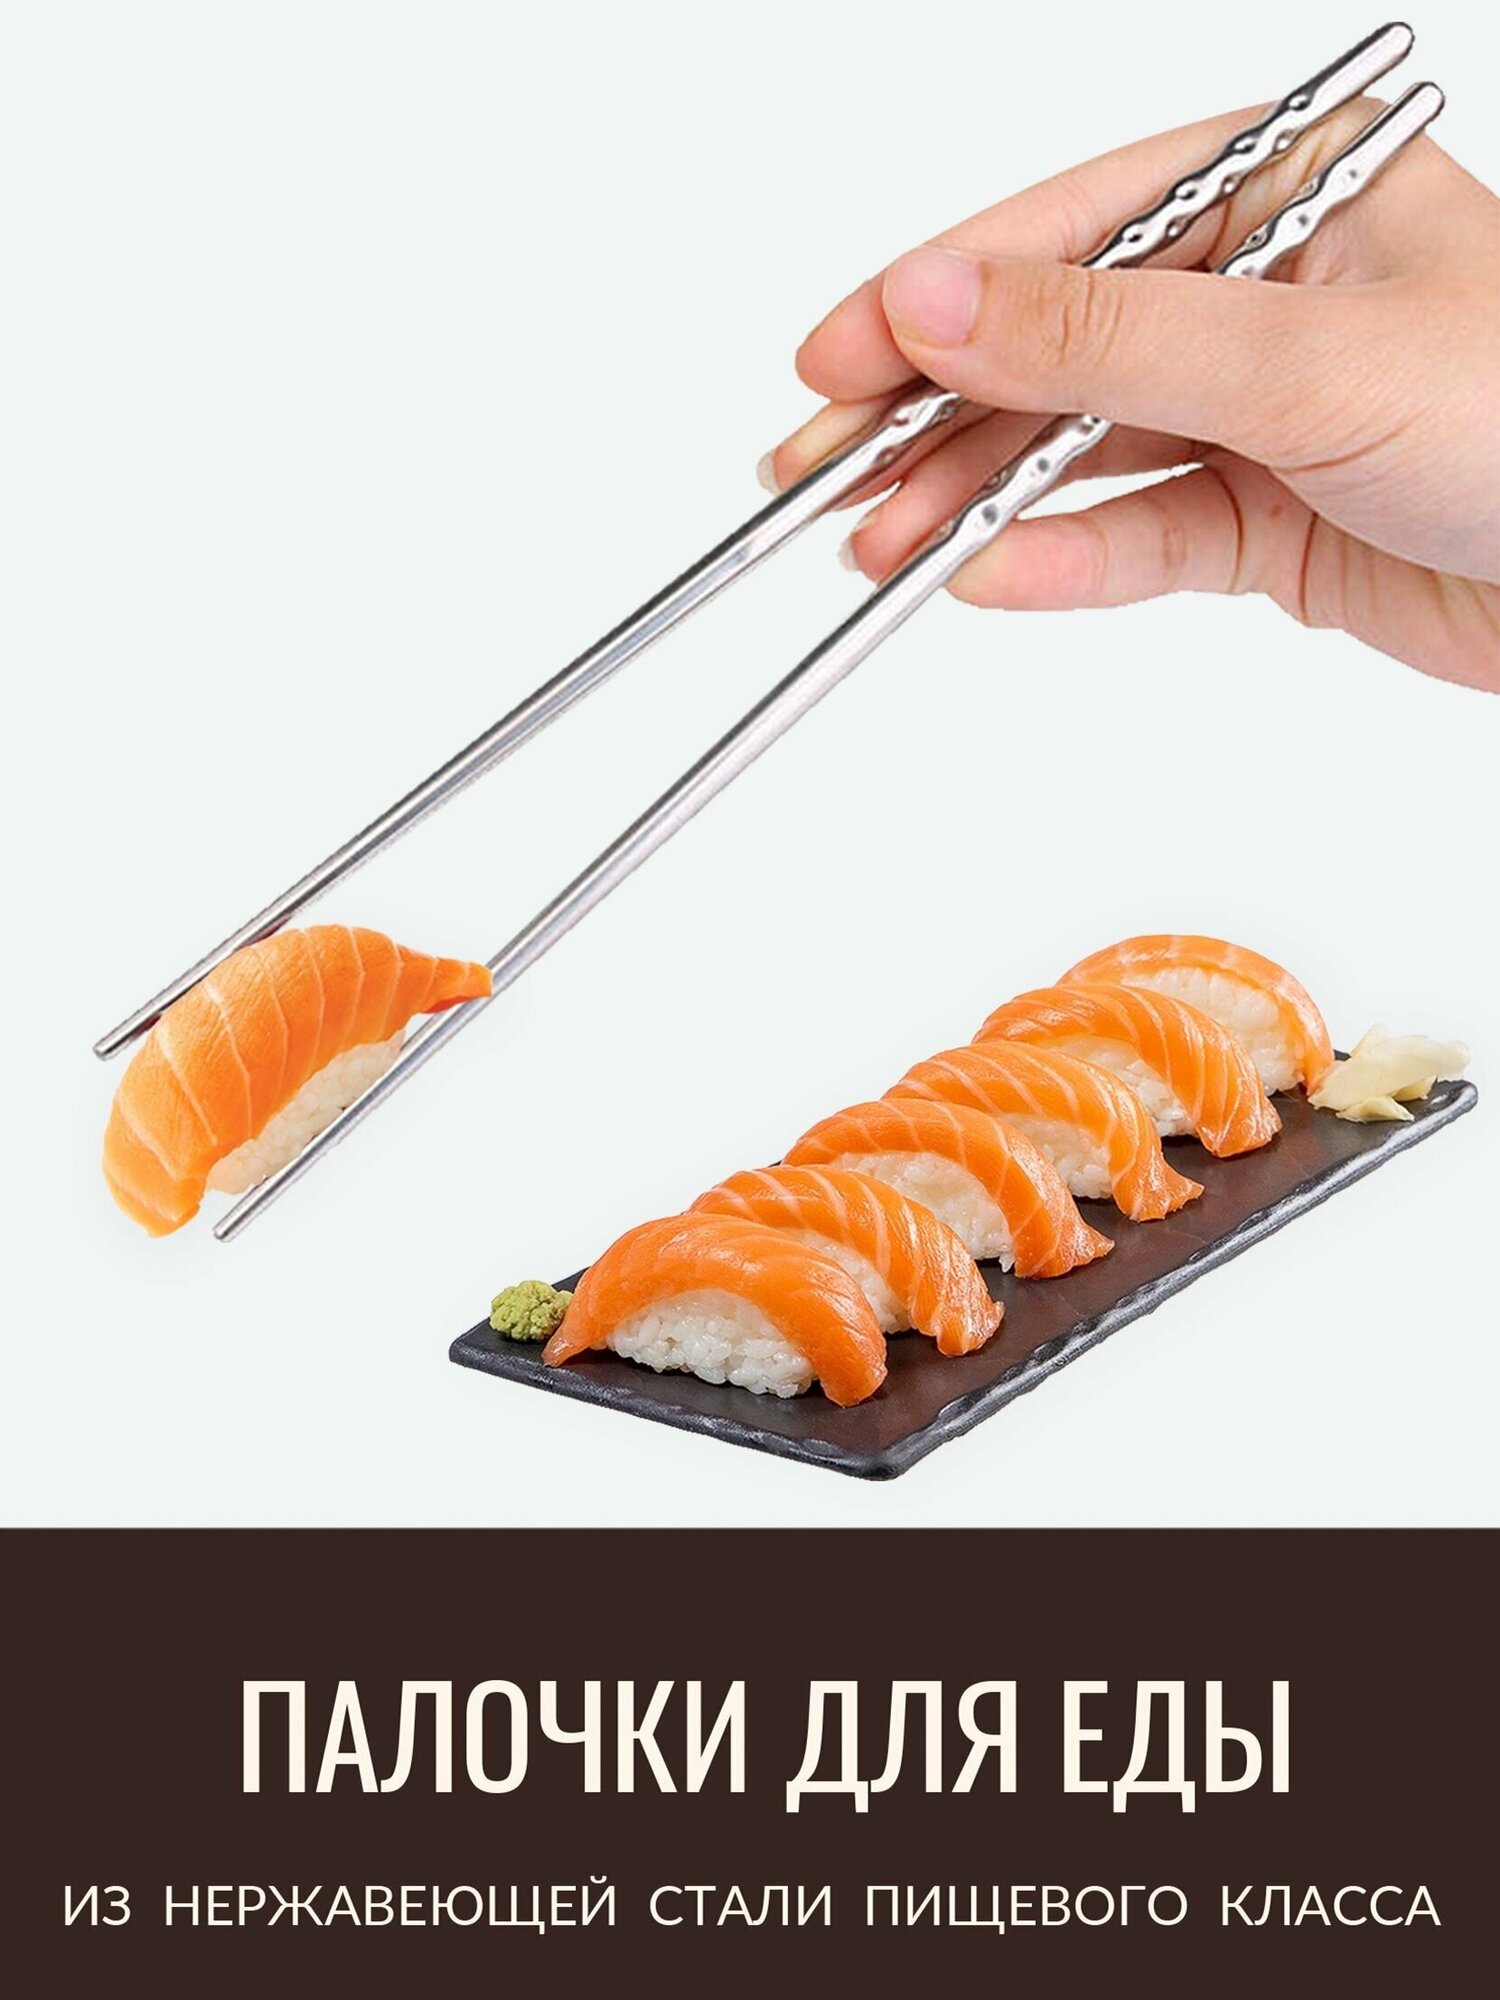 Палочки для еды роллов суши многоразовые металлические 22,5 см, 1 пара